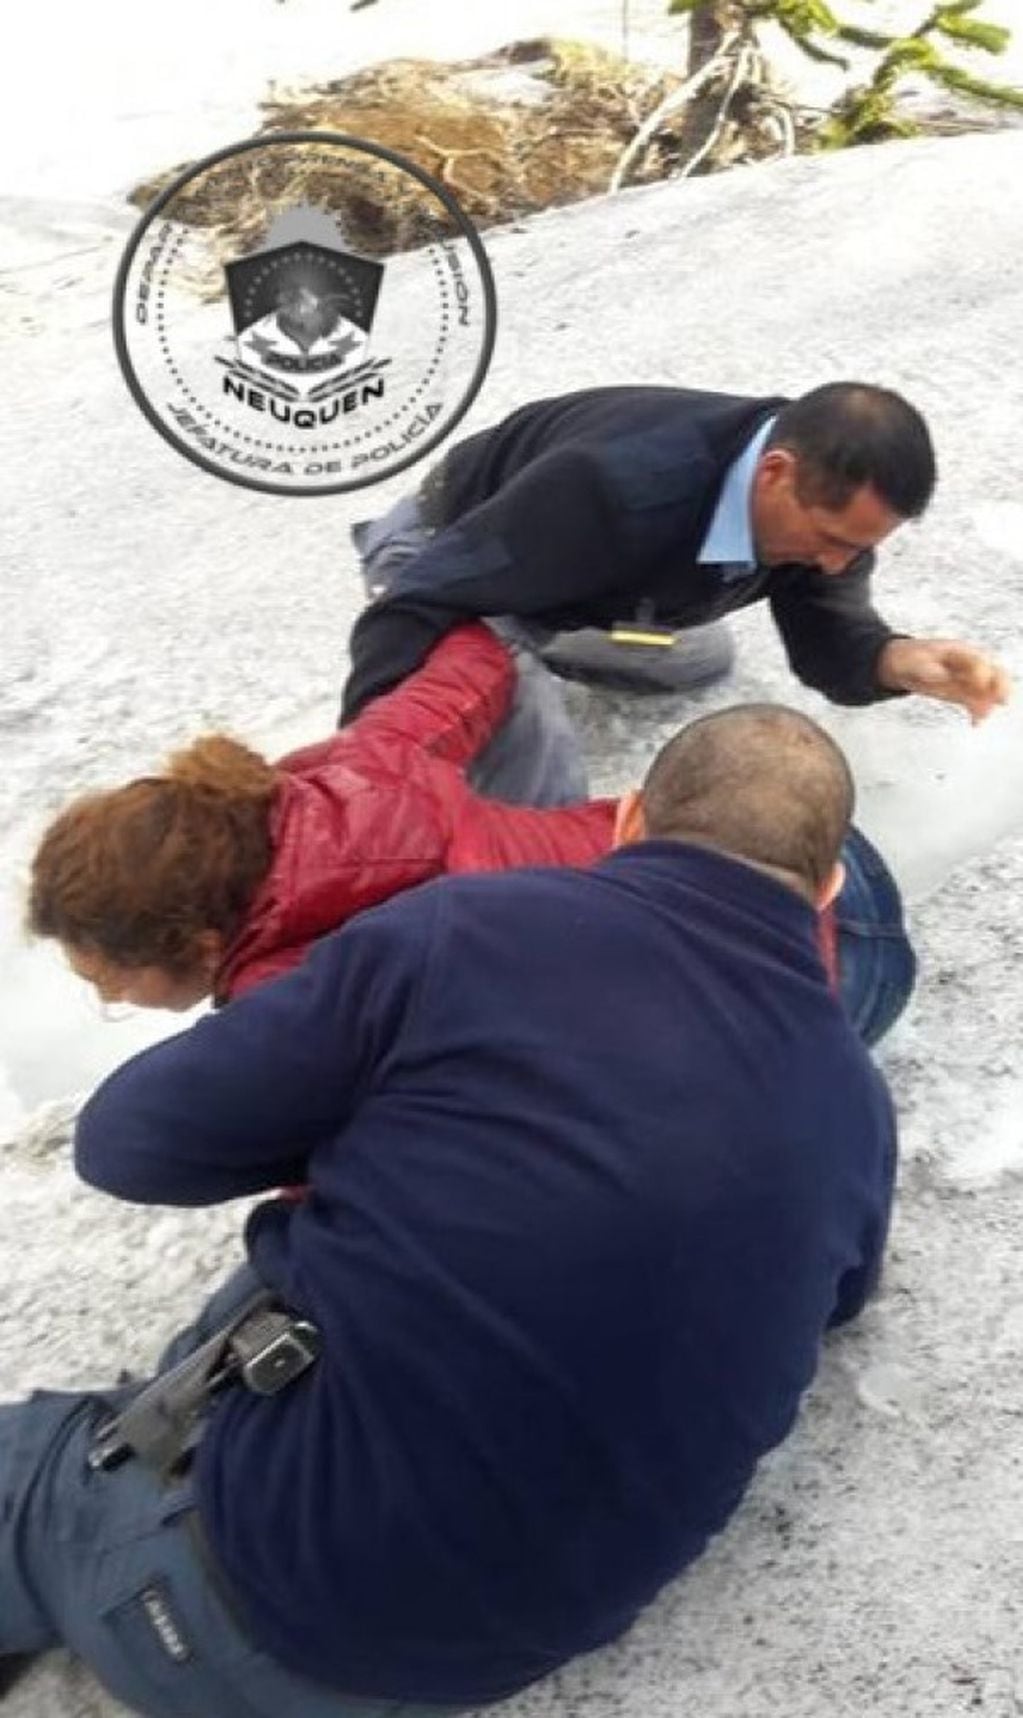 La policía de Neuquén intervino en el rescato (web)